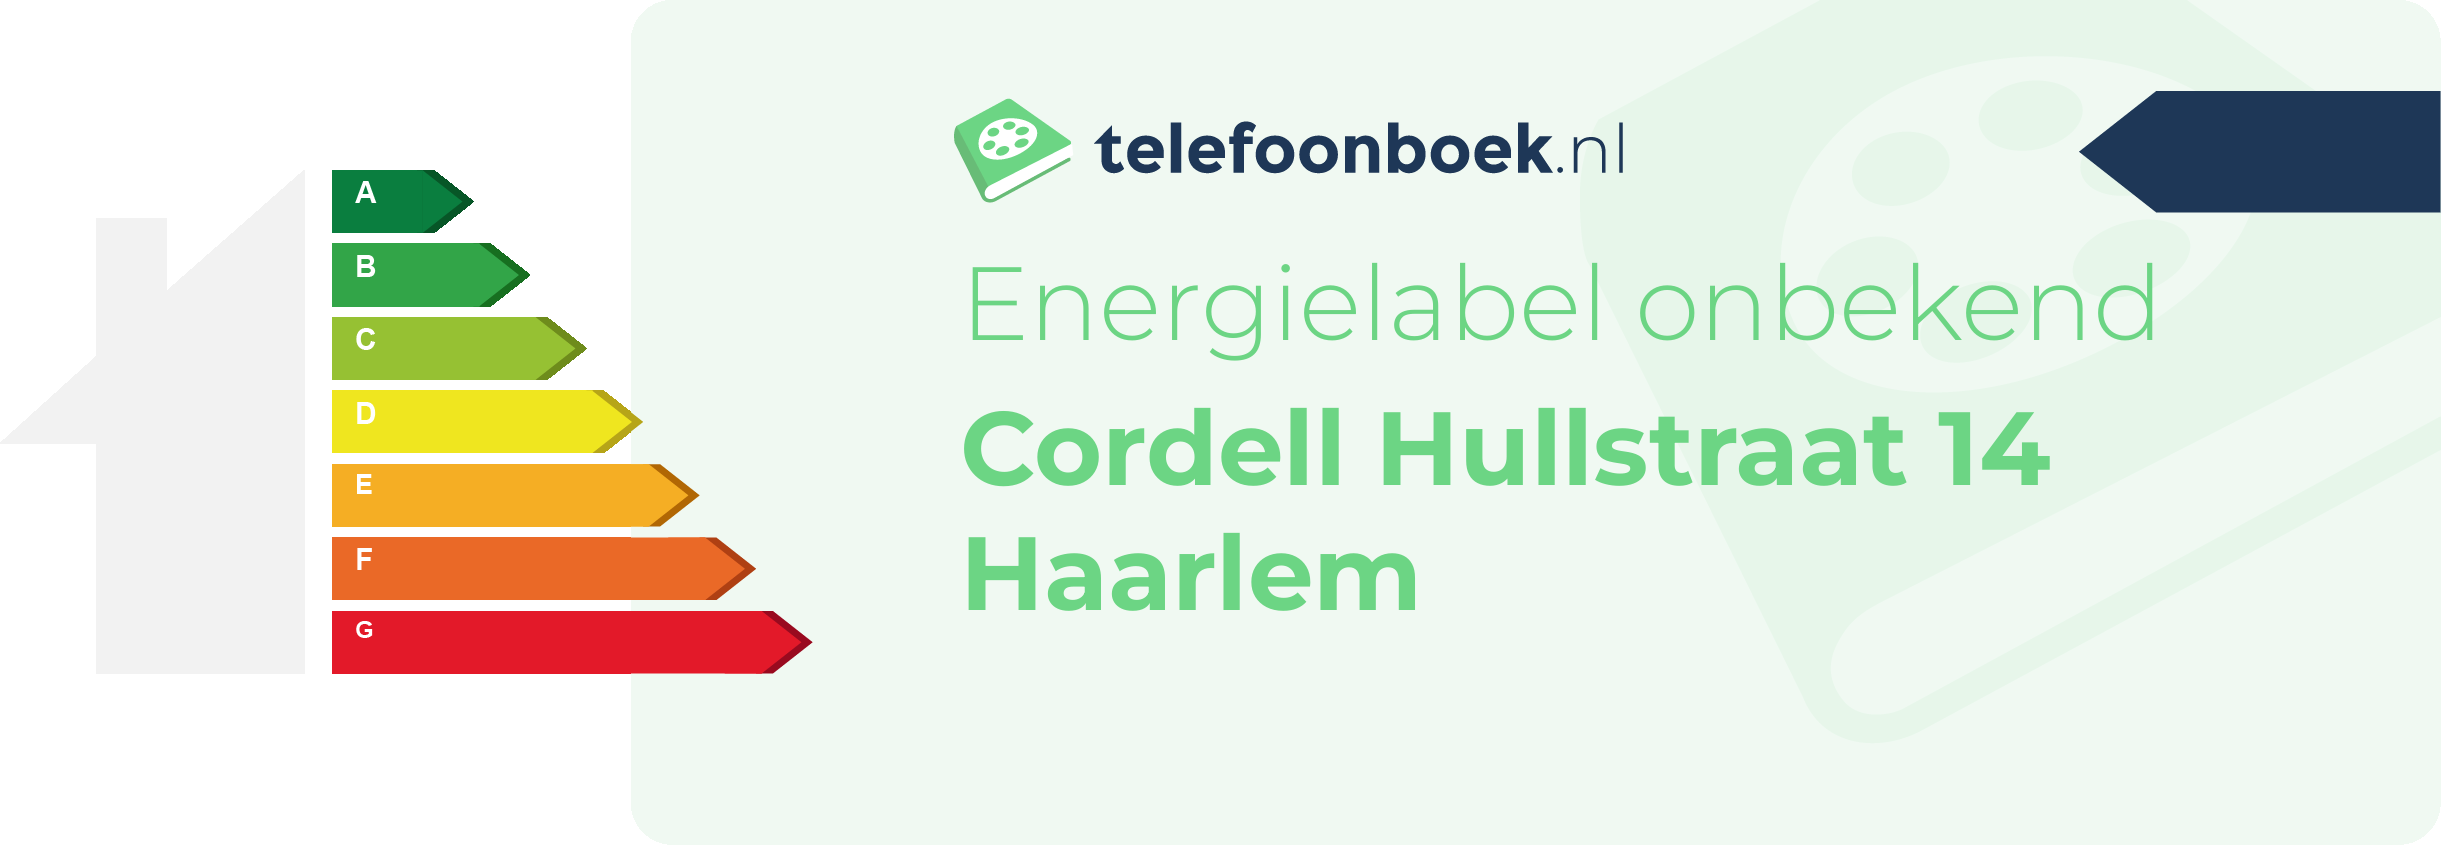 Energielabel Cordell Hullstraat 14 Haarlem